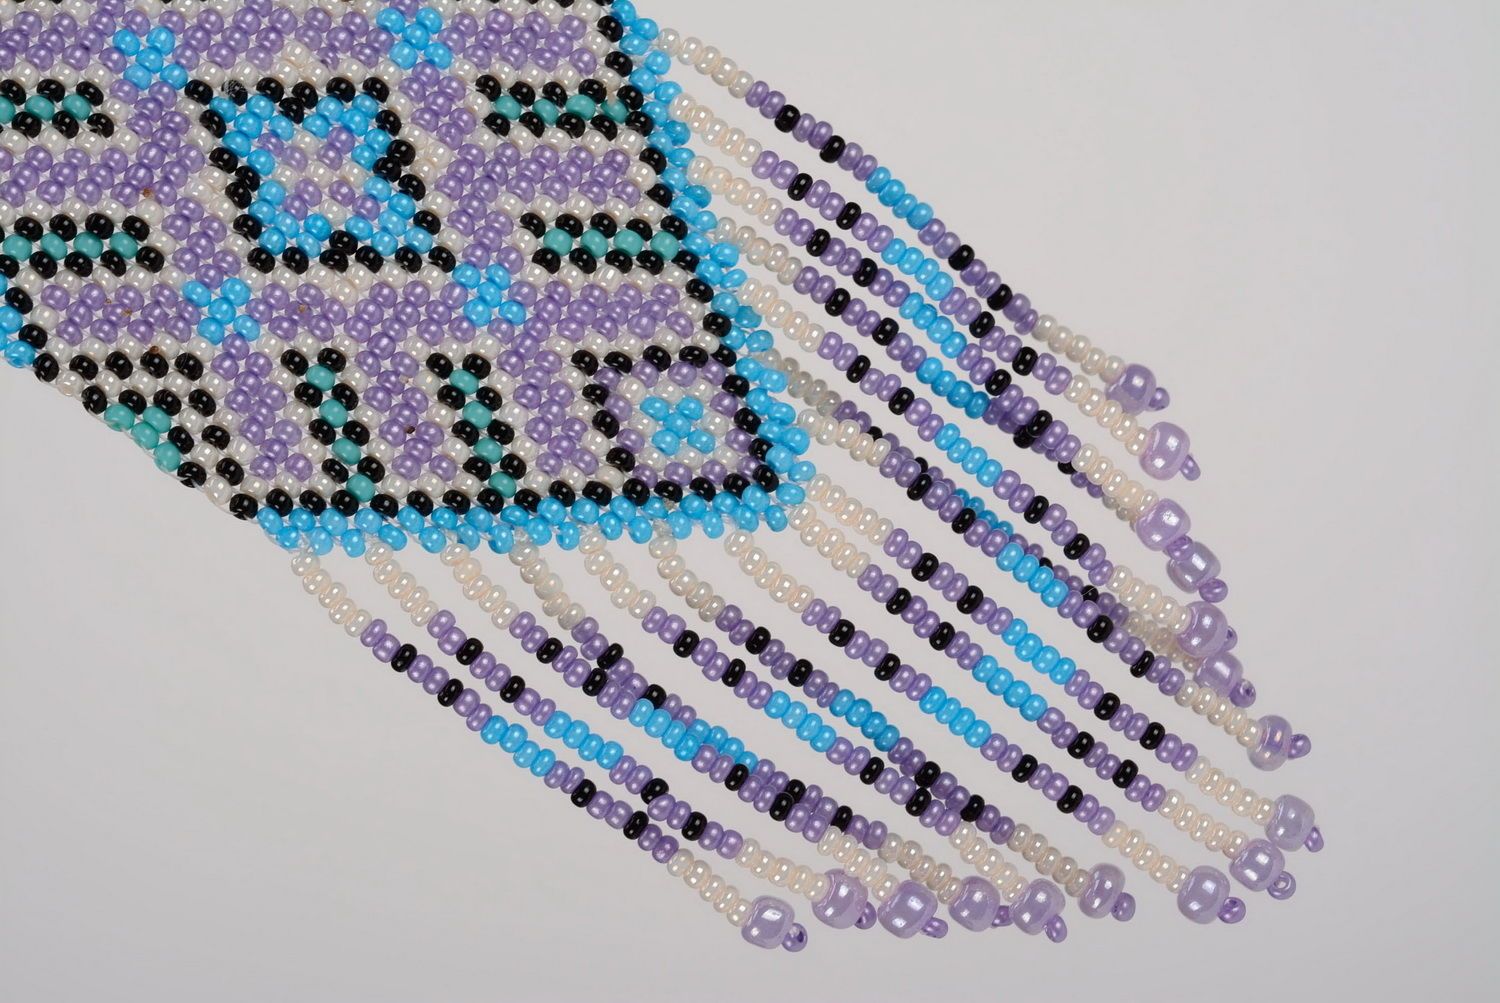 Handmade gerdan made of beads photo 1